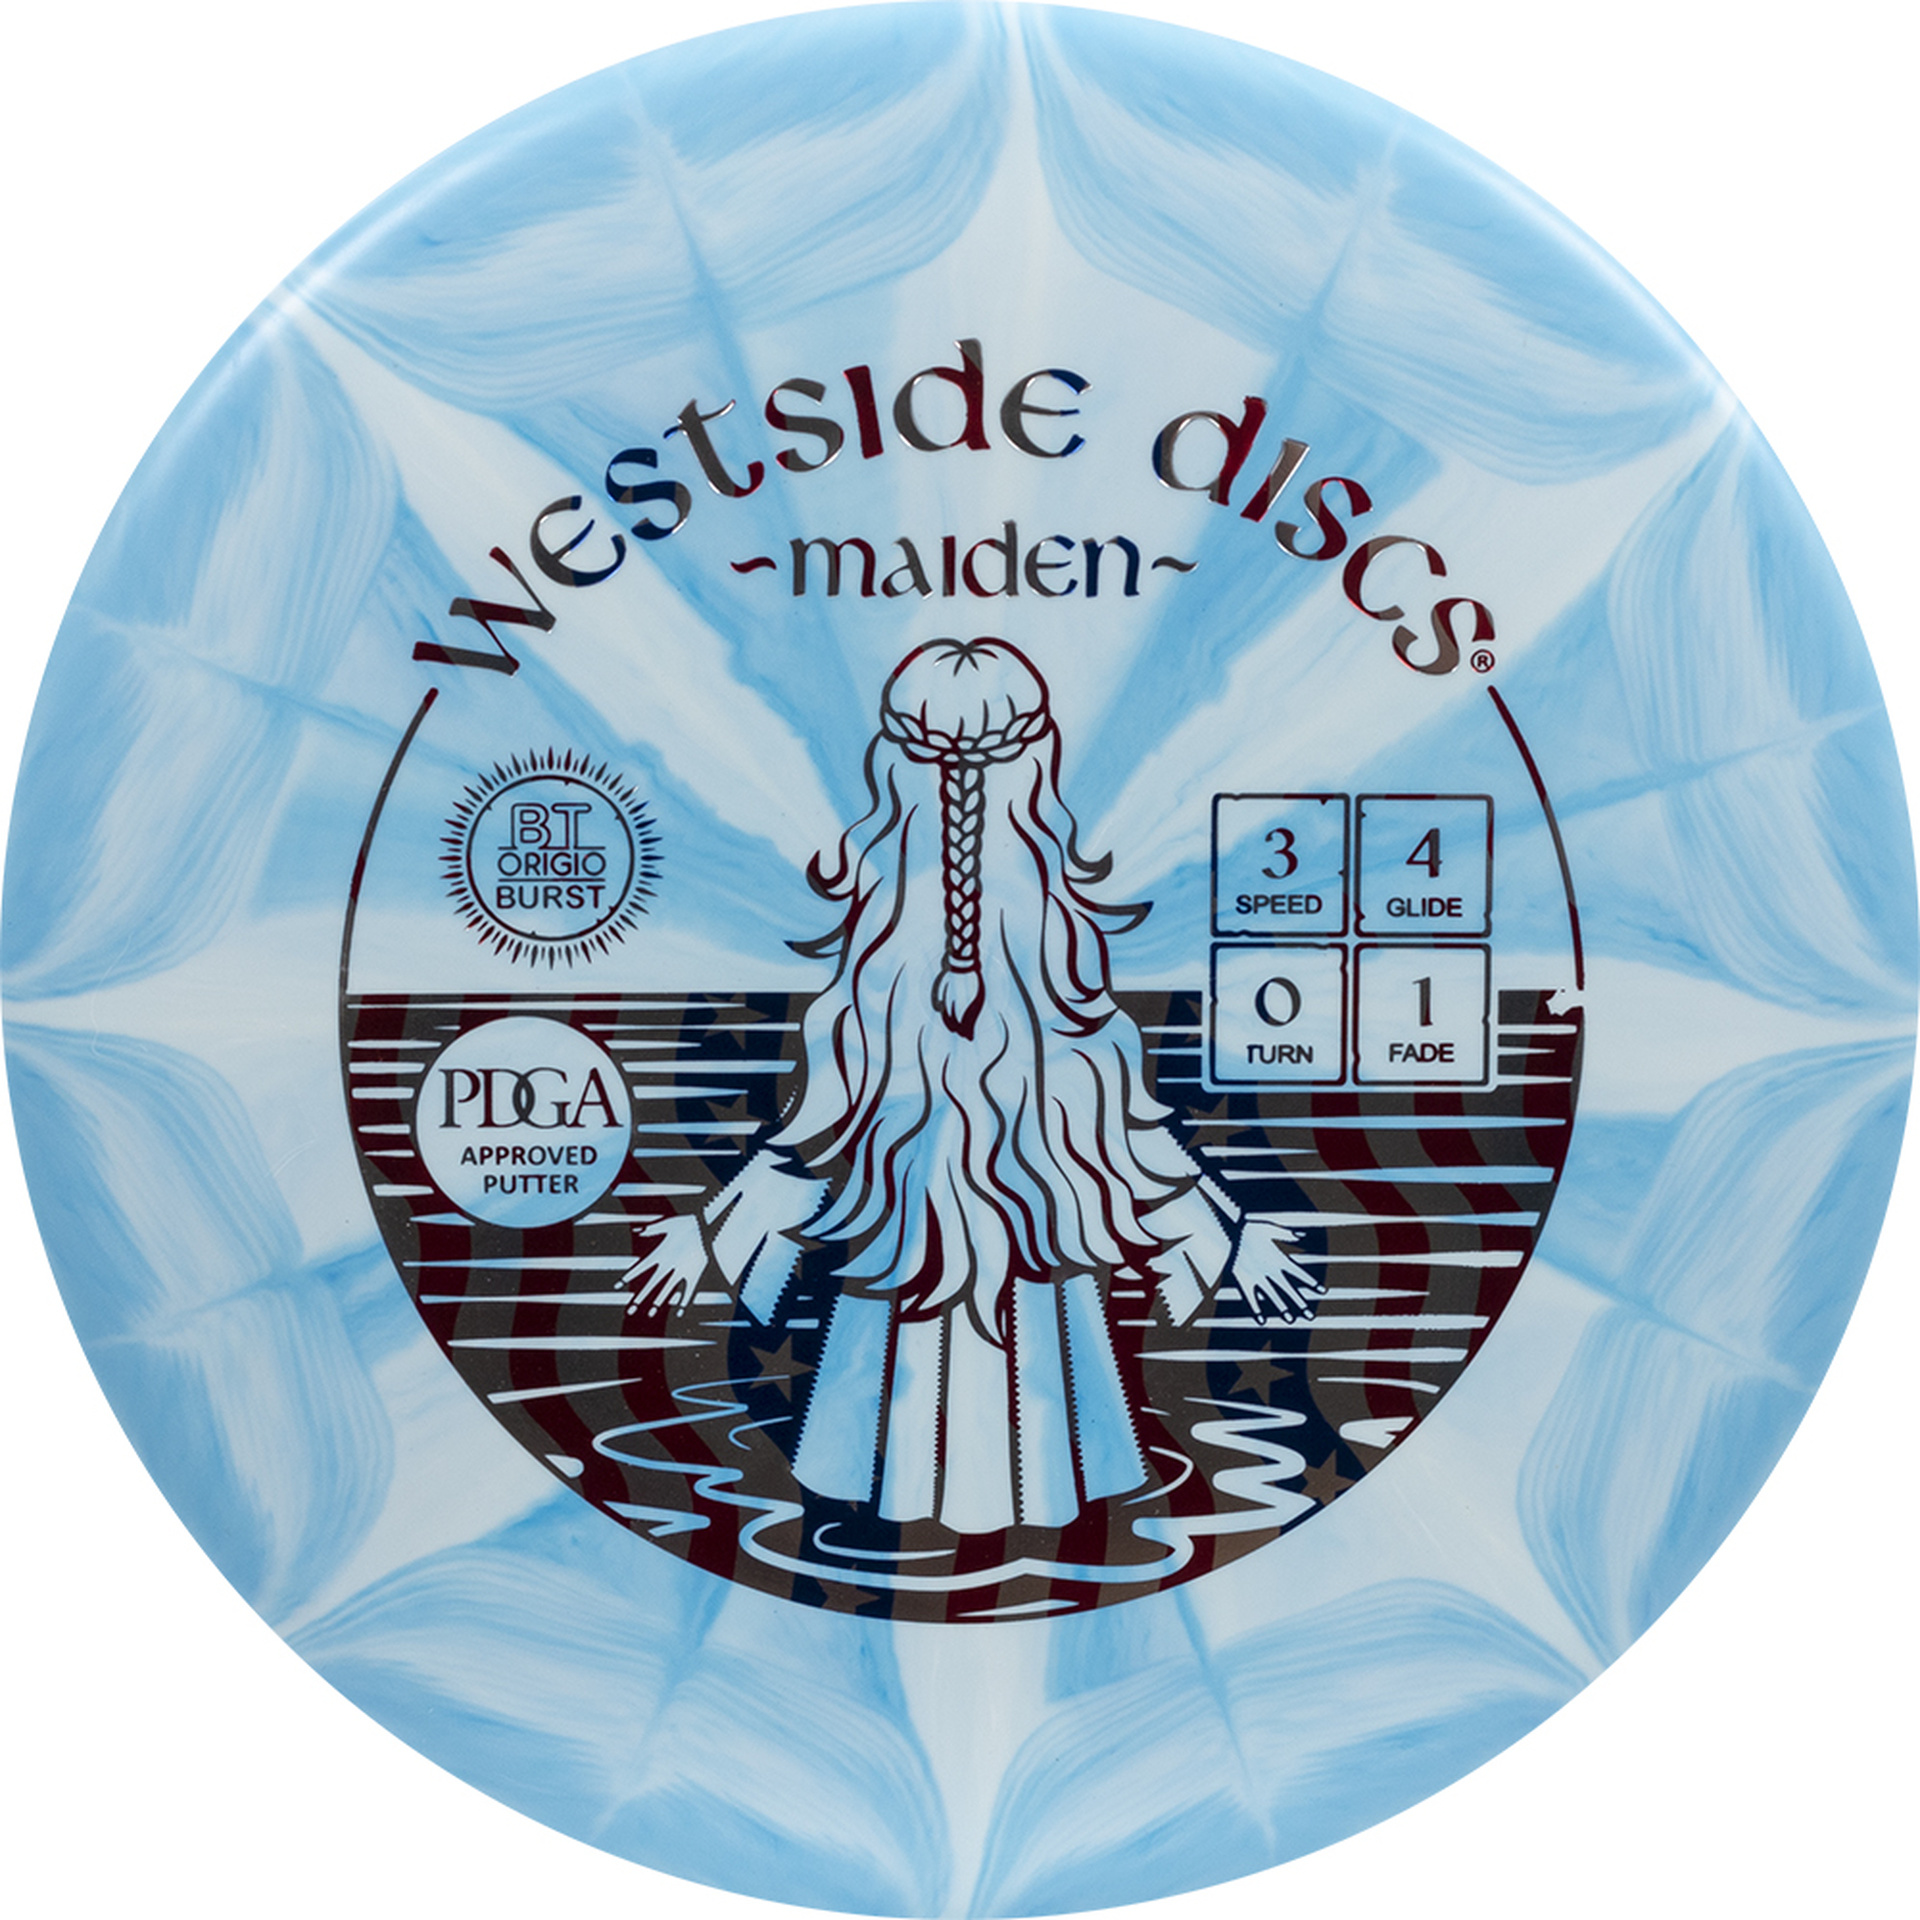 Westside Discs Westside Discs - Maiden